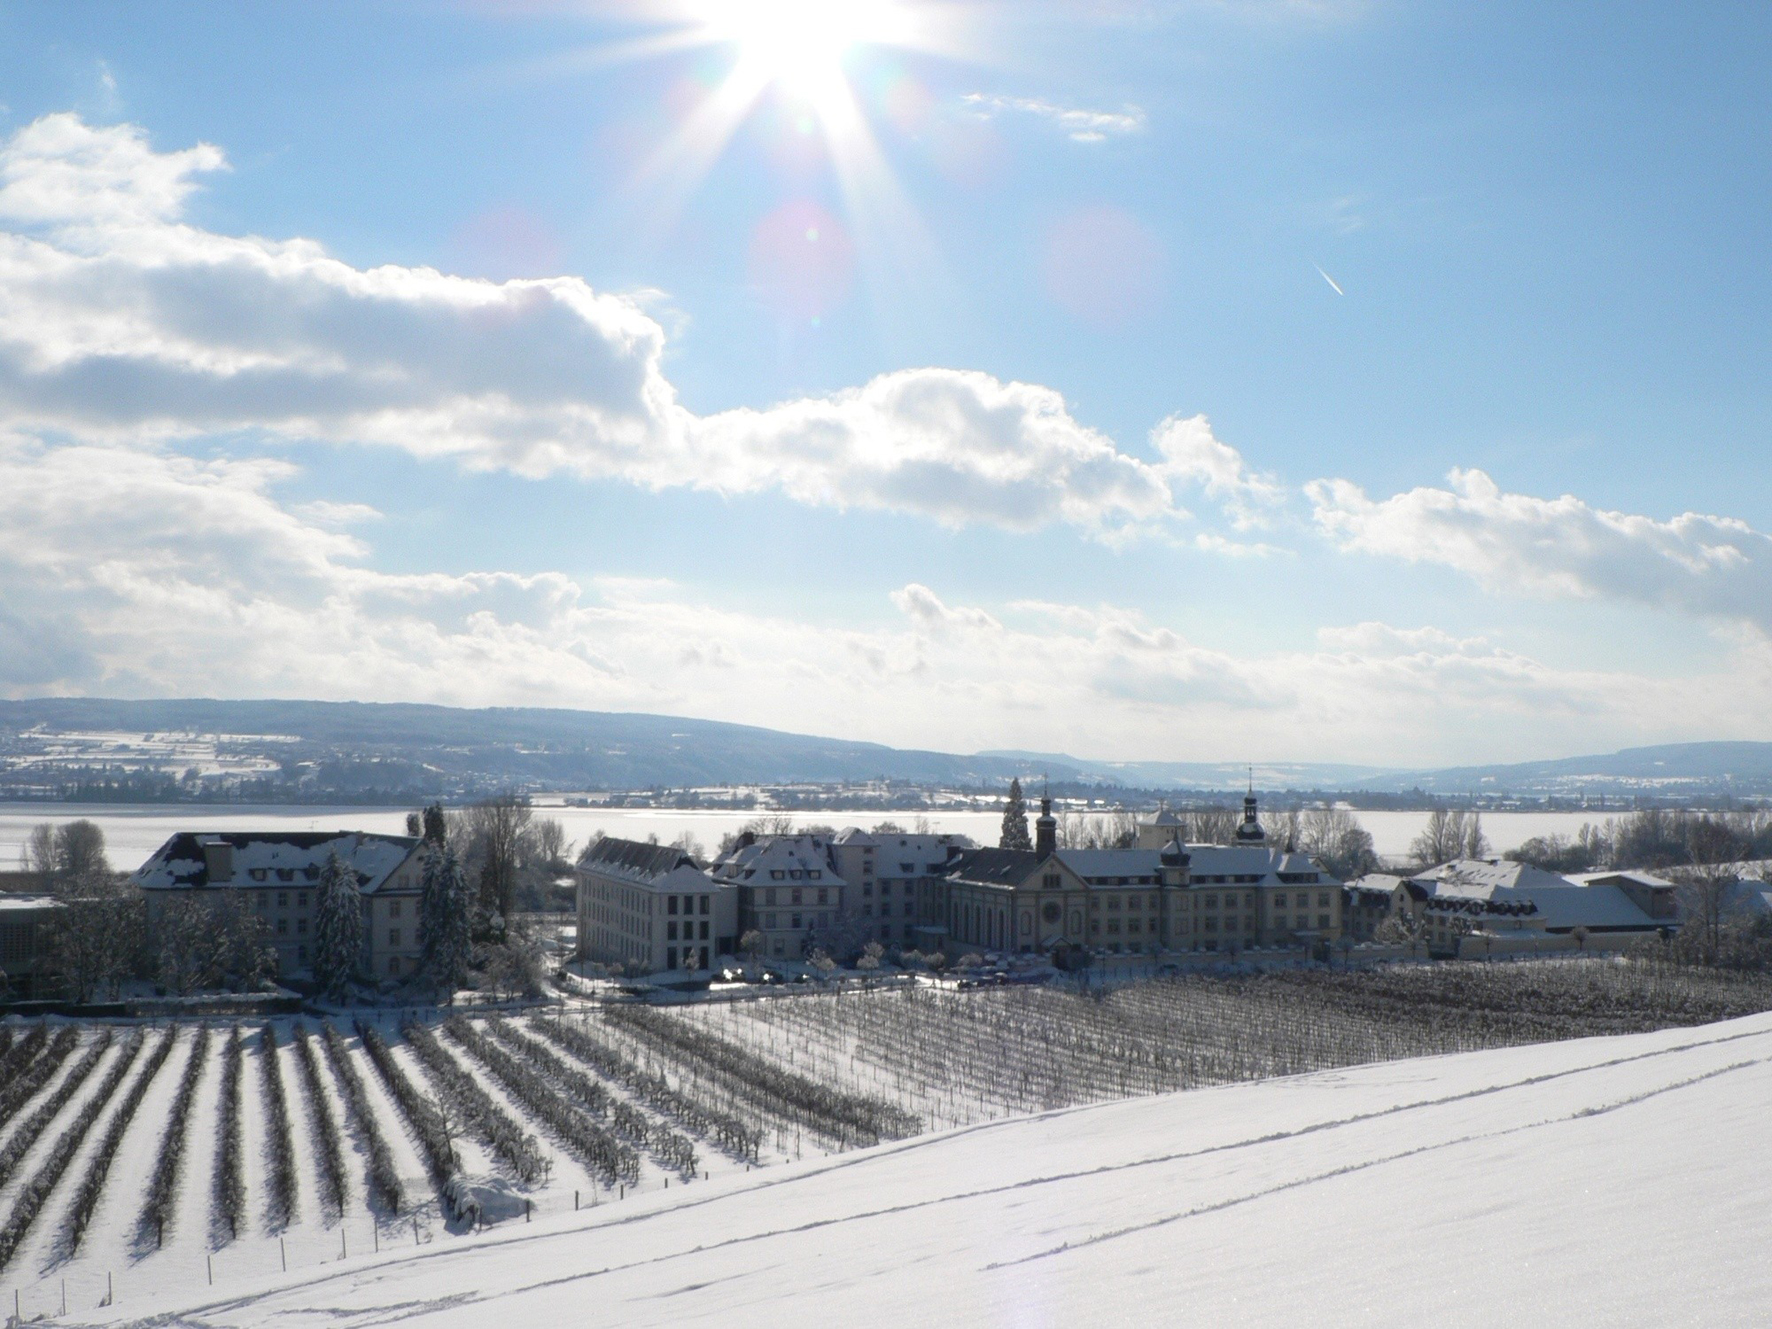 Kloster Hegne im Winter.
